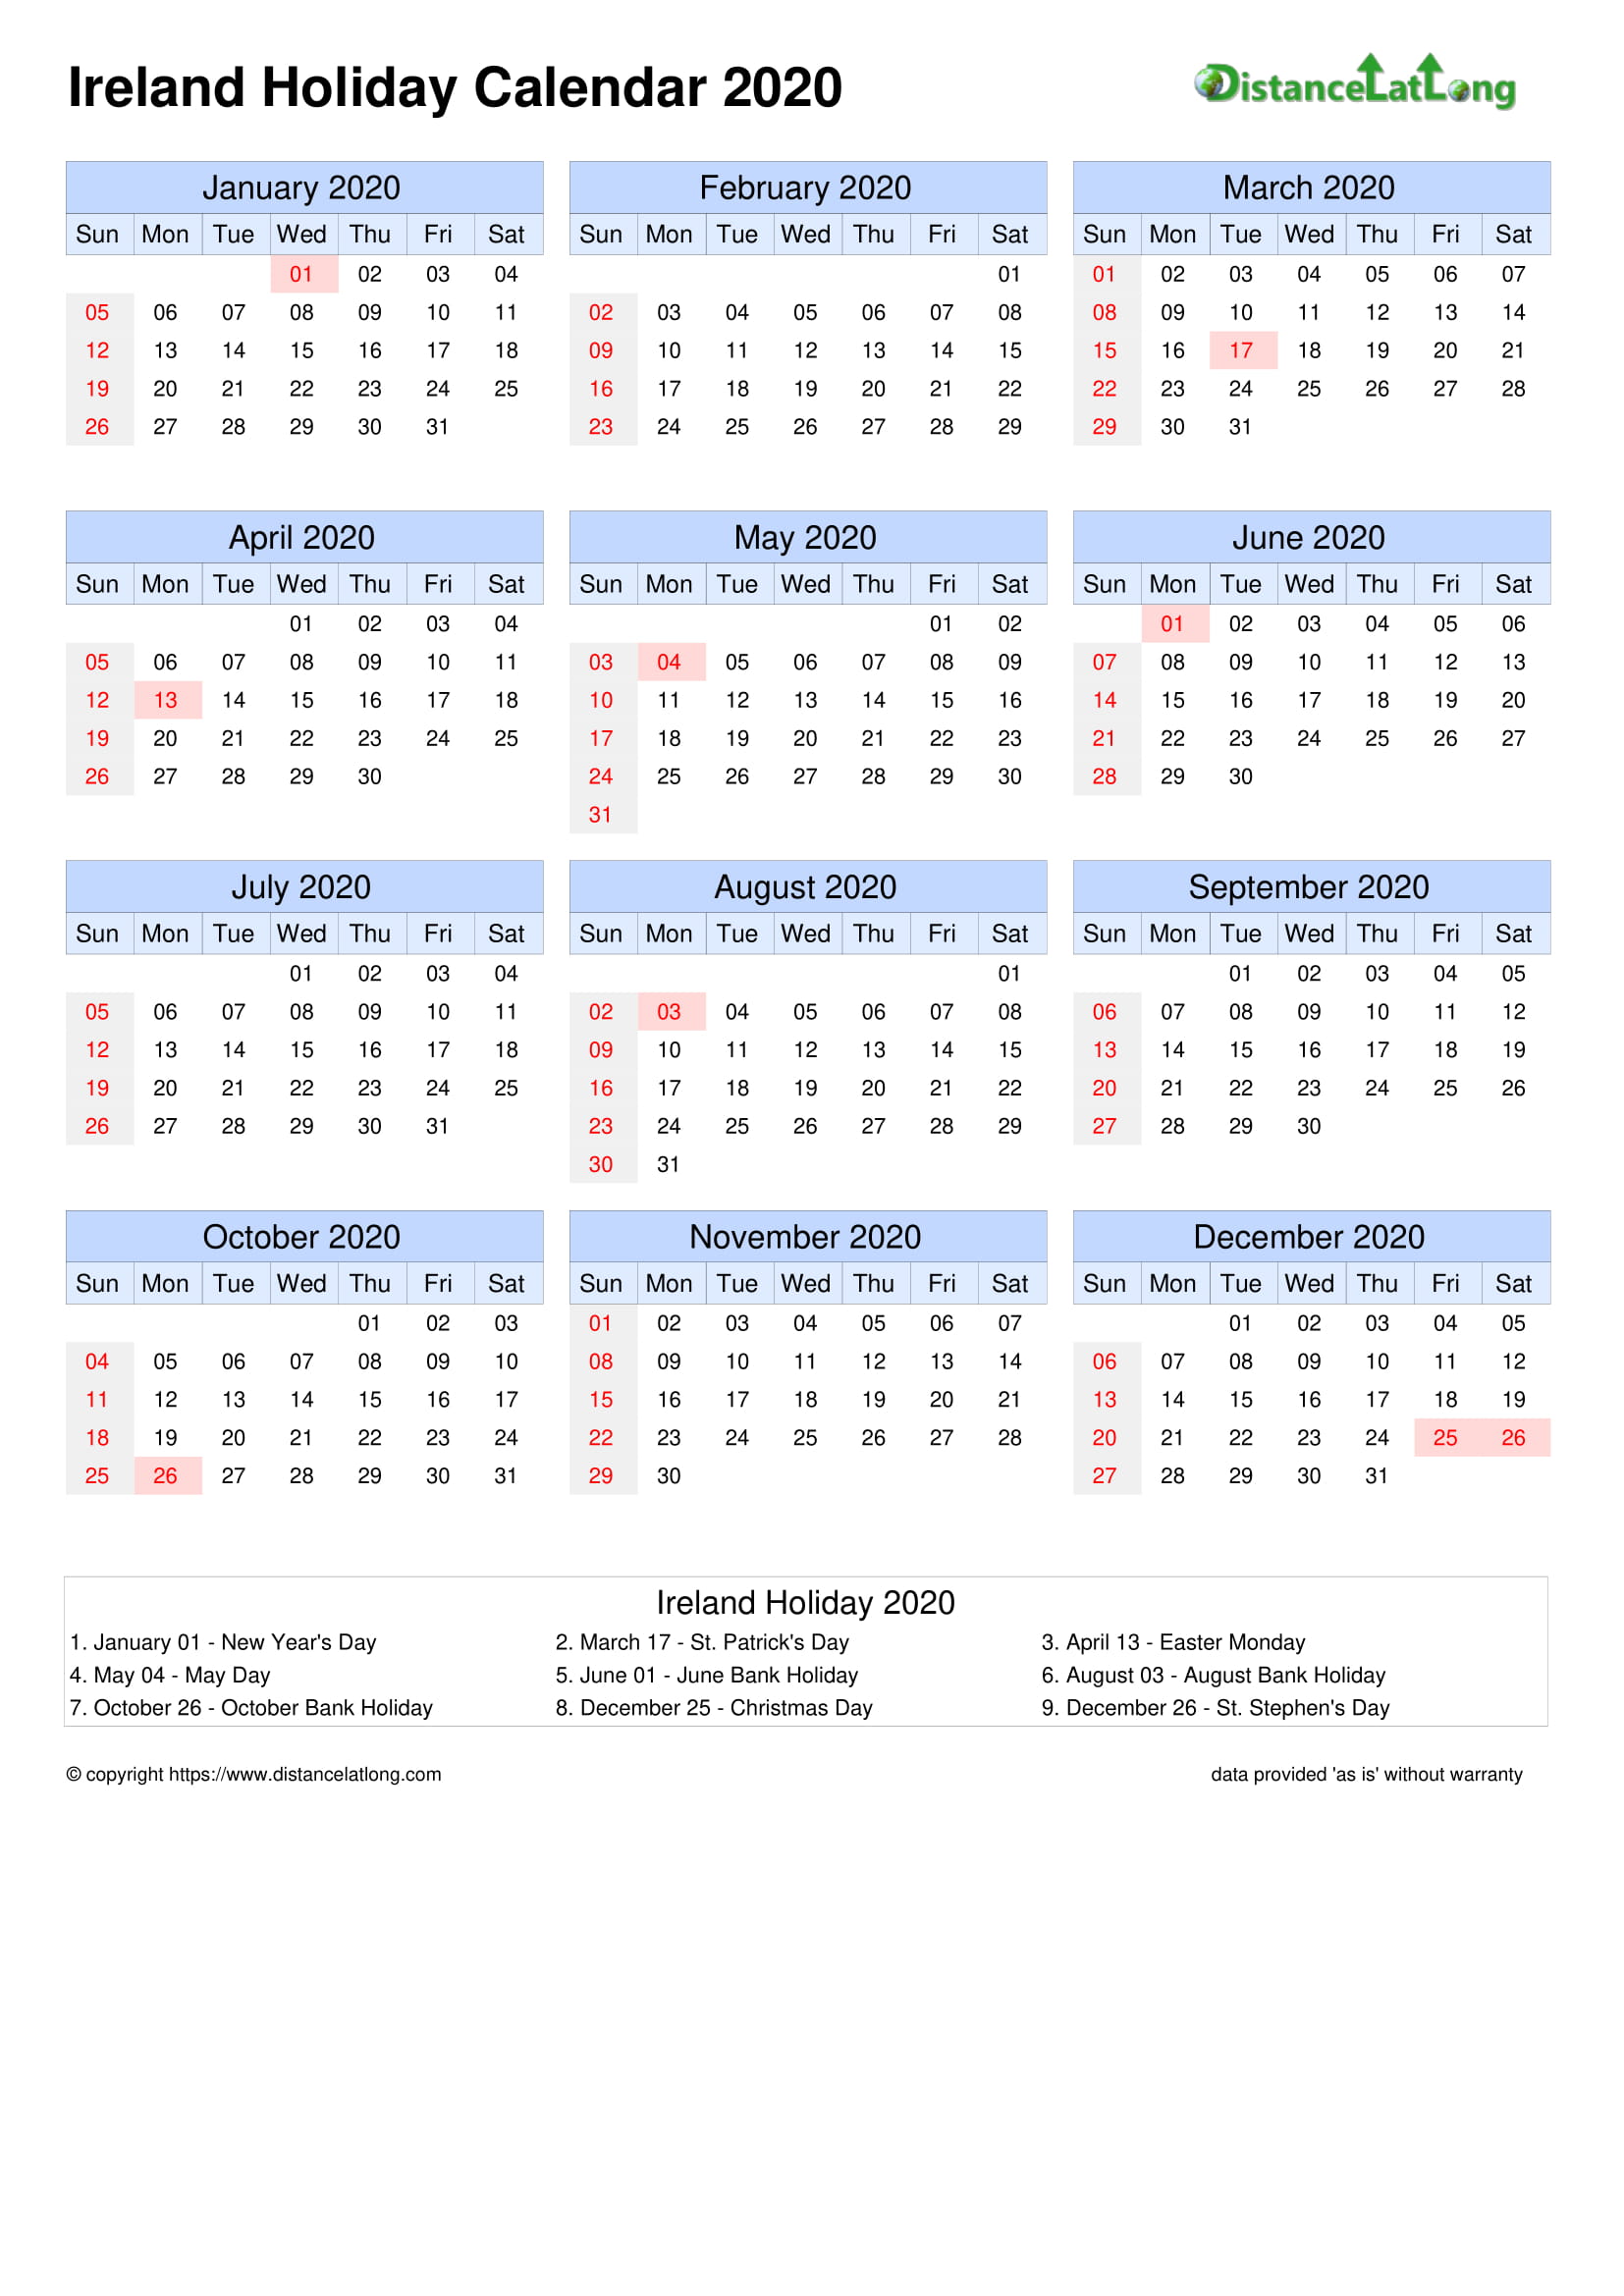 Ireland Holiday Calendar 2020 Jpg Templates Distancelatlong Com1